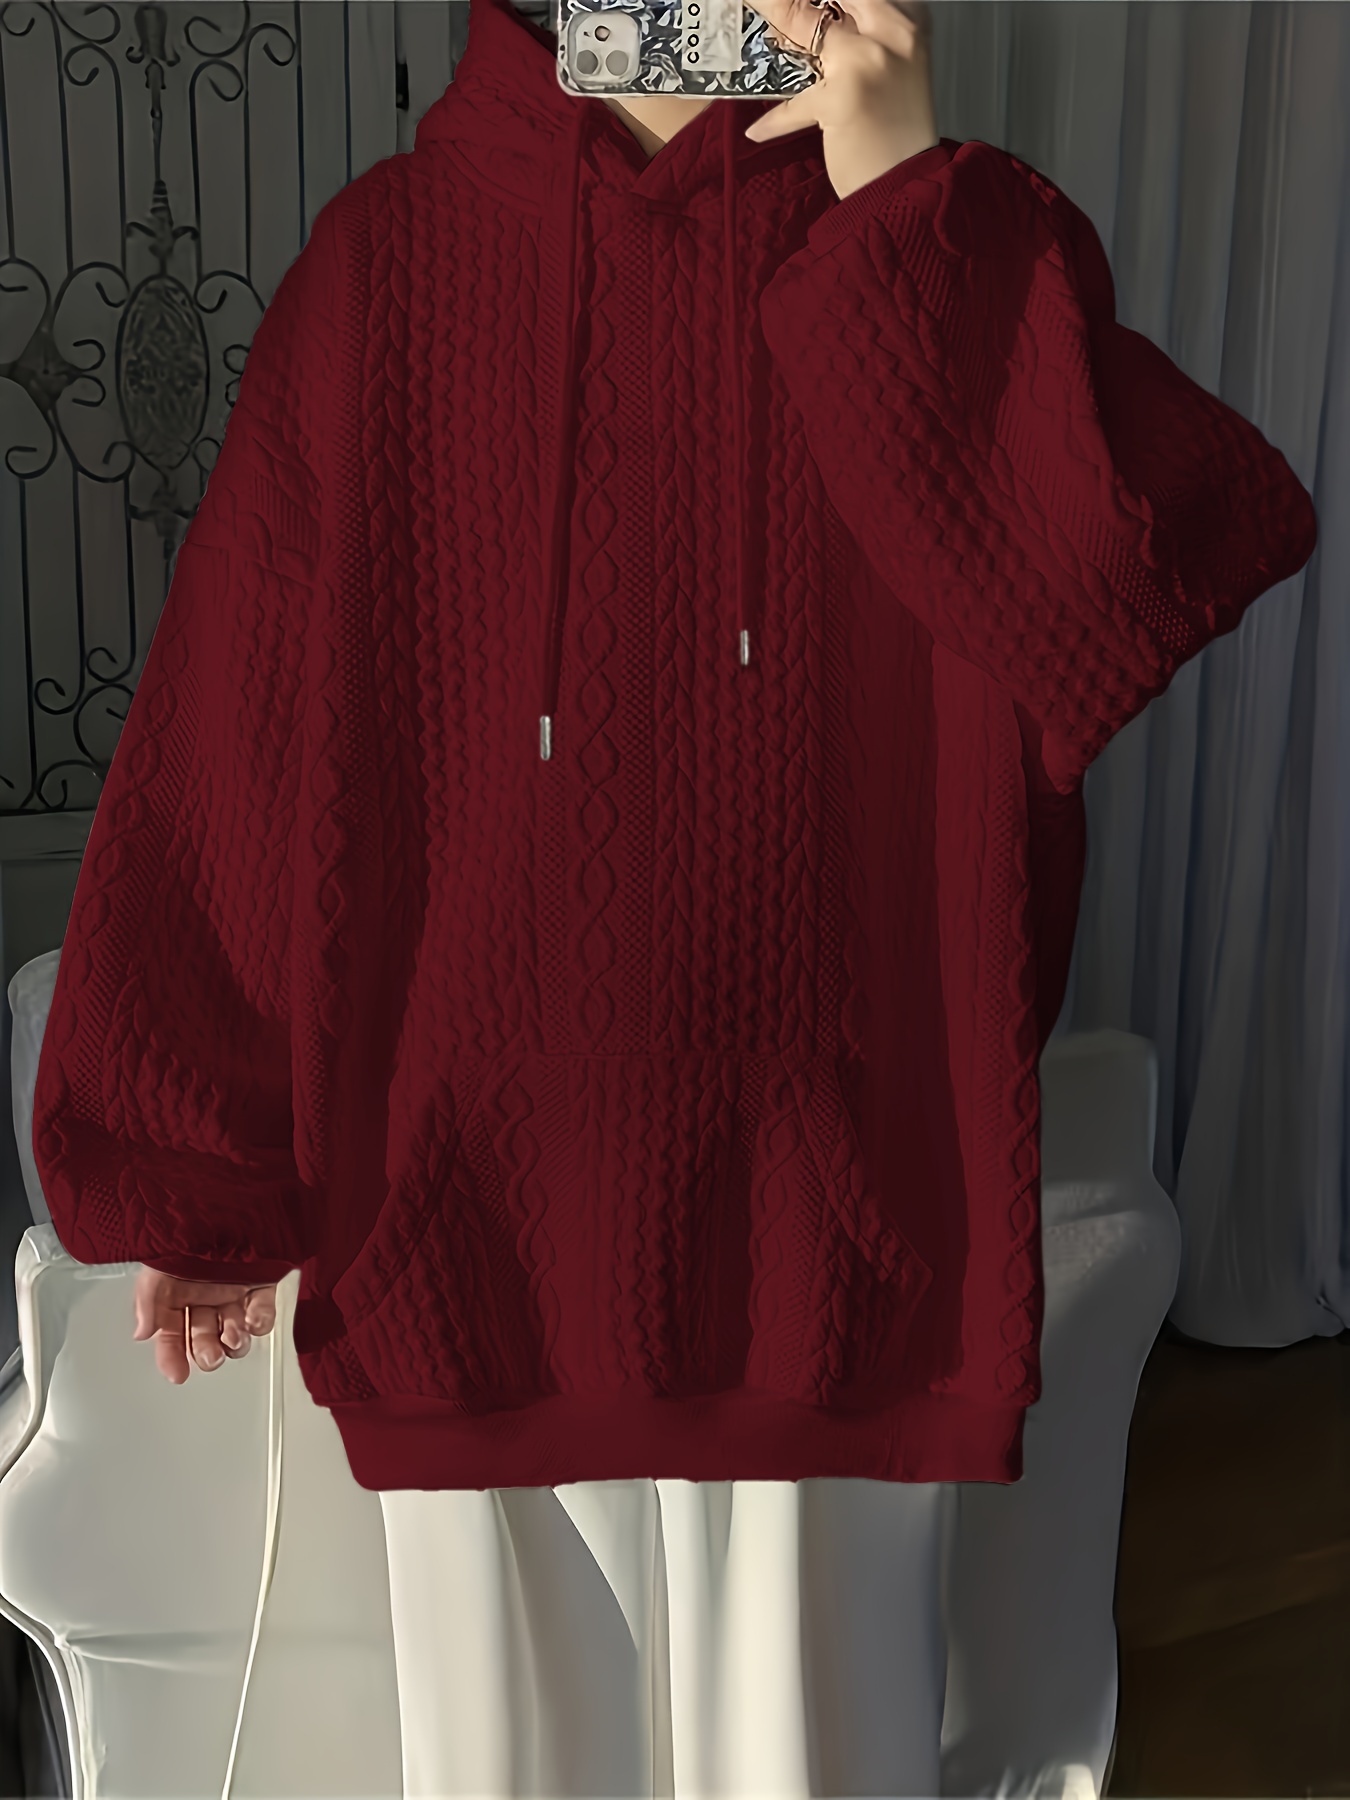 solid textured kangaroo pocket hoodie casual long sleeve drawstring hoodies sweatshirt womens clothing details 9